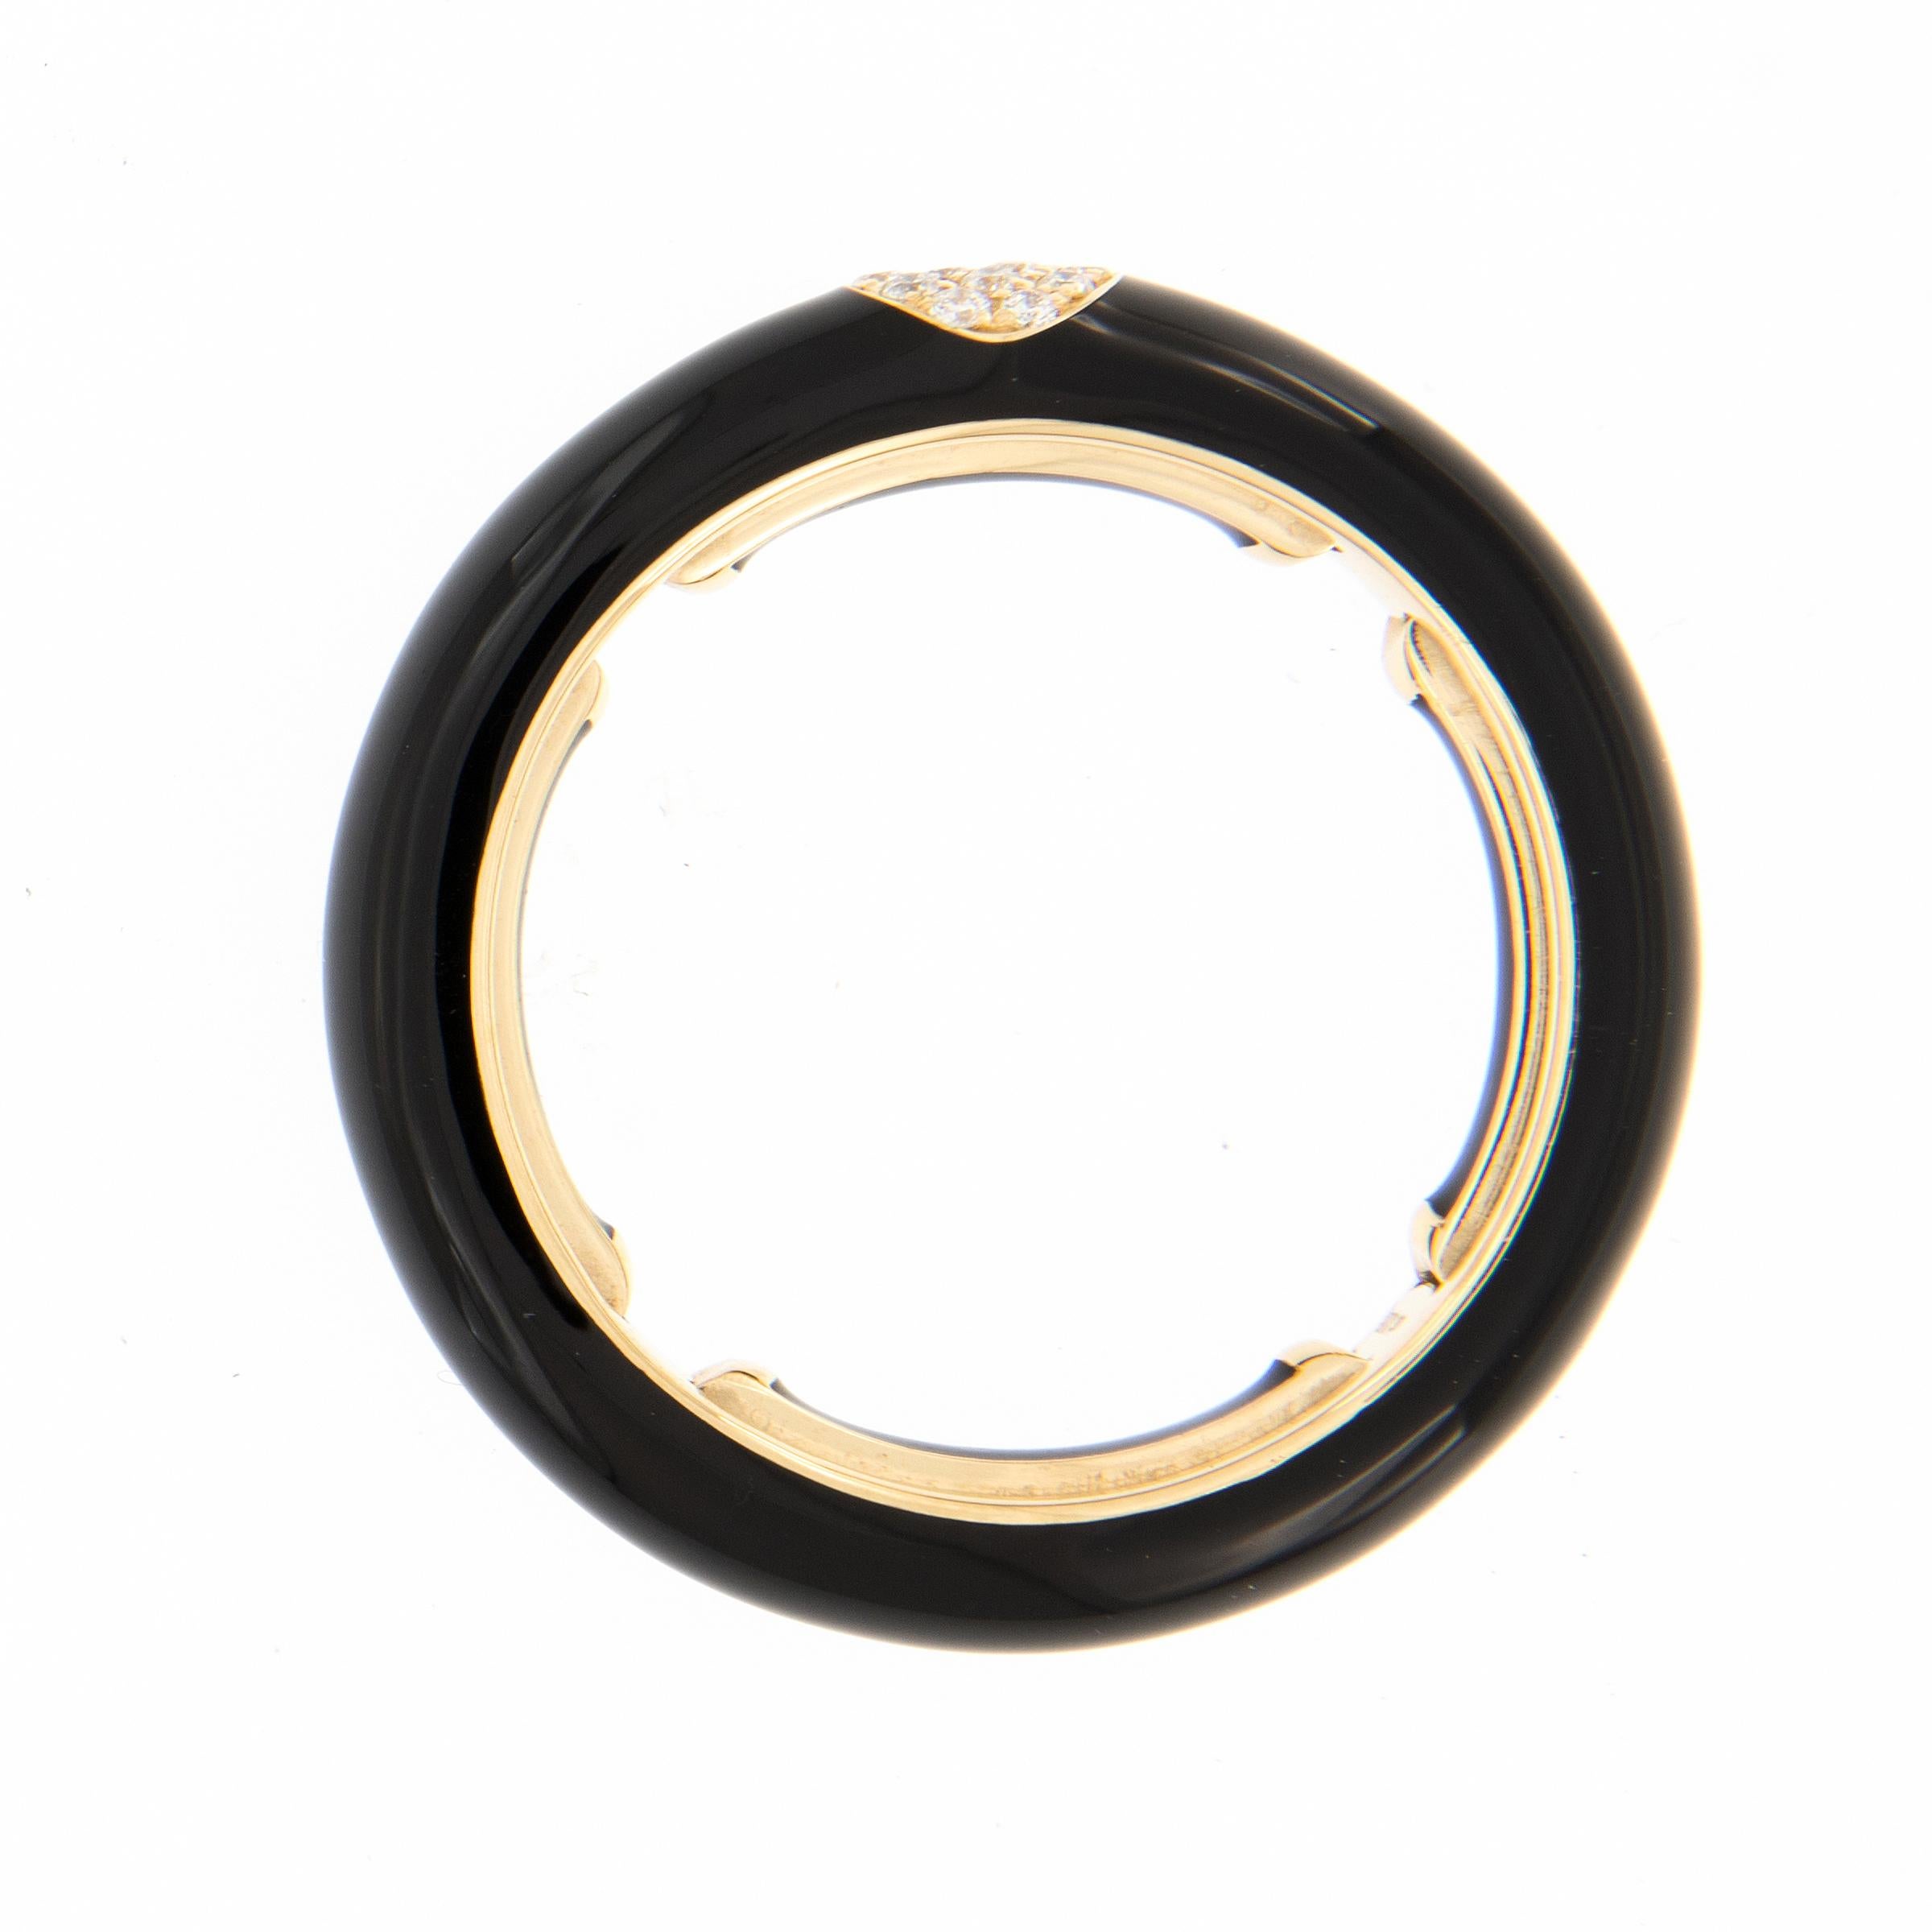 Kühn, hell und schön! Dieser moderne Emaille-Ring wird in Italien für Campanelli & Pear handgefertigt. Der Ring ist aus 18 Karat Gelbgold mit einer glatten Emaille in sattem Schwarz und mit 14 eingefassten Diamanten. Der Ring verfügt über eine